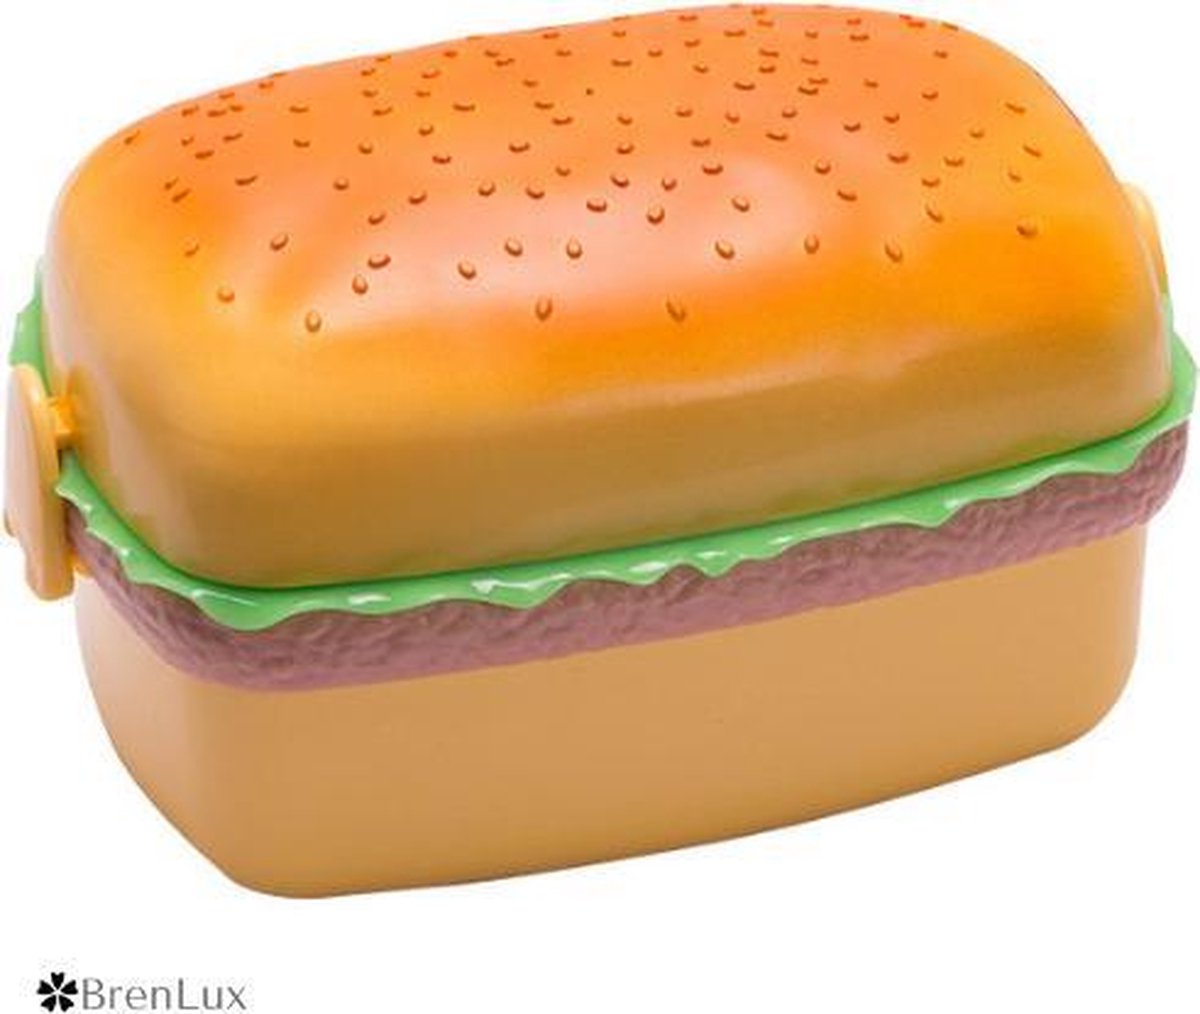 ✿Brenlux® Brooddoos hamburger – Lunchbox - Brooddoos kinderen – Brooddoos voor het werk - Broodtrommel – Brooddoos volwassenen - Stevige lunchbox – Bewaarbrooddoos – Makkelijk te openen en sluiten - Lunch box als grappige hamburger –